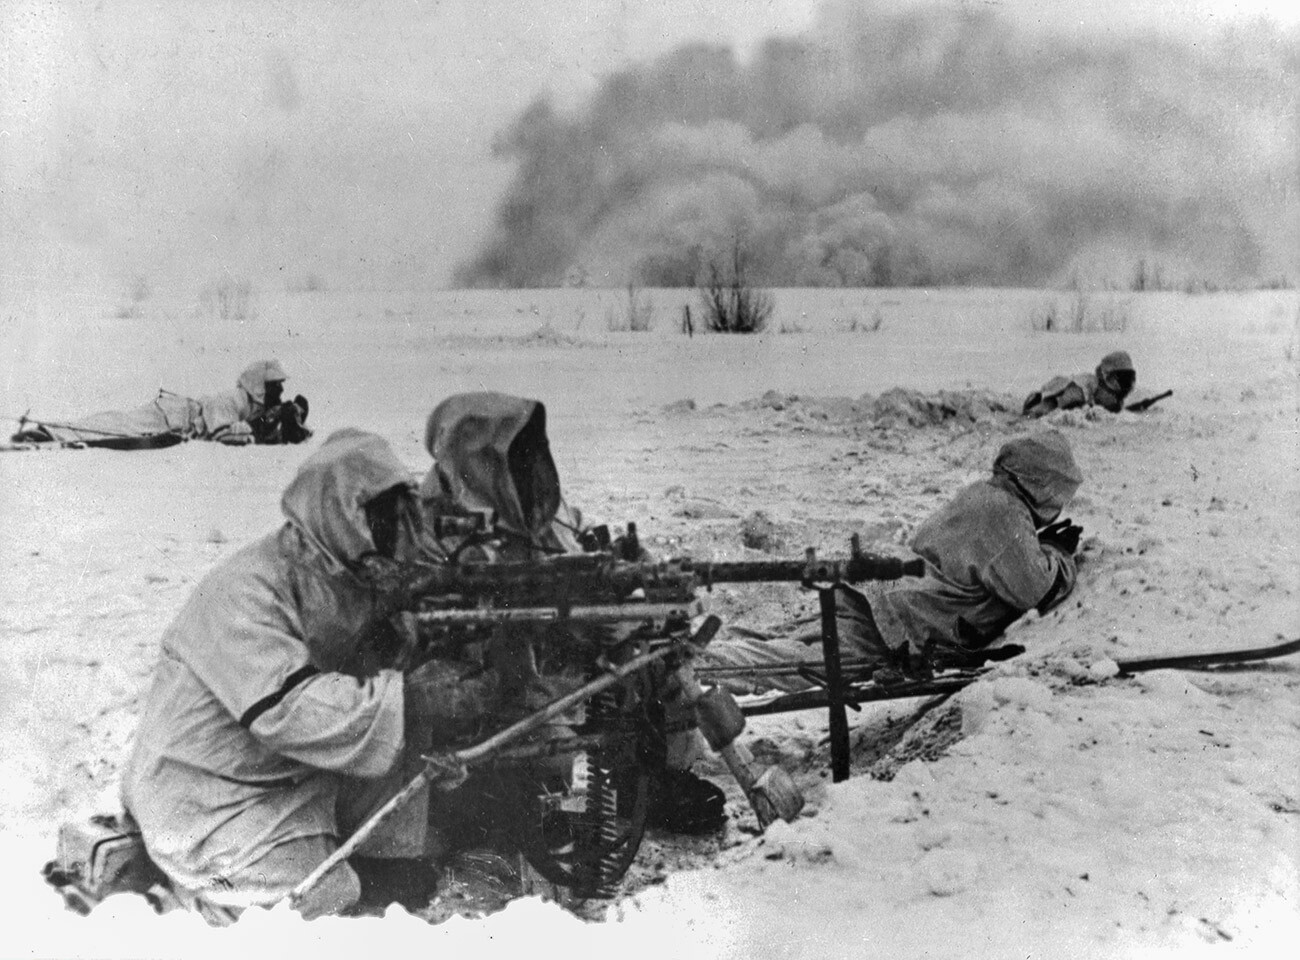 BITKA ZA STALINGRAD, 1942. Nemški vojaki, ki se borijo pri Stalingradu med drugo svetovno vojno, december 1942